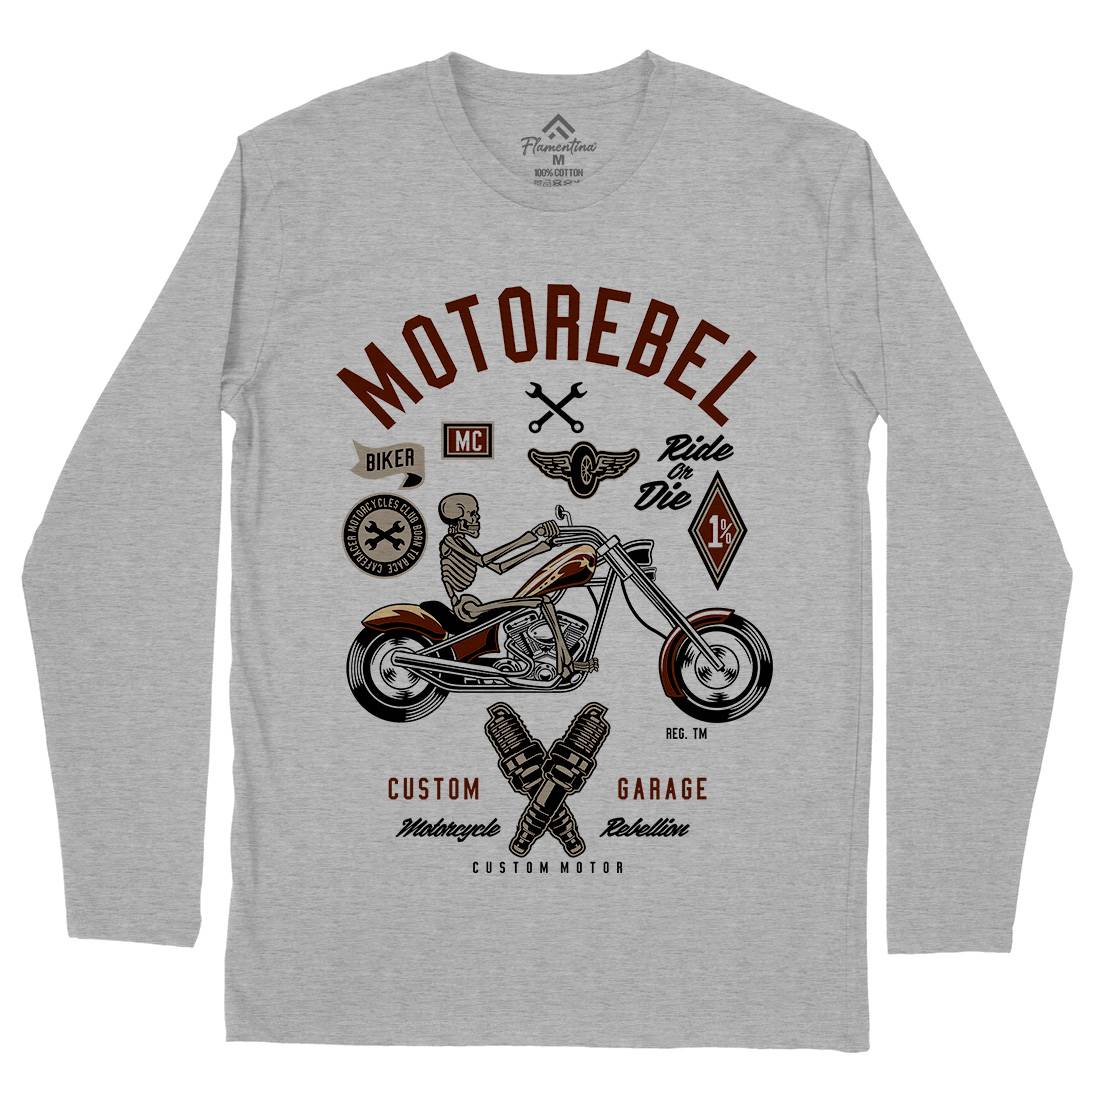 Motorebel Skull Mens Long Sleeve T-Shirt Motorcycles D557